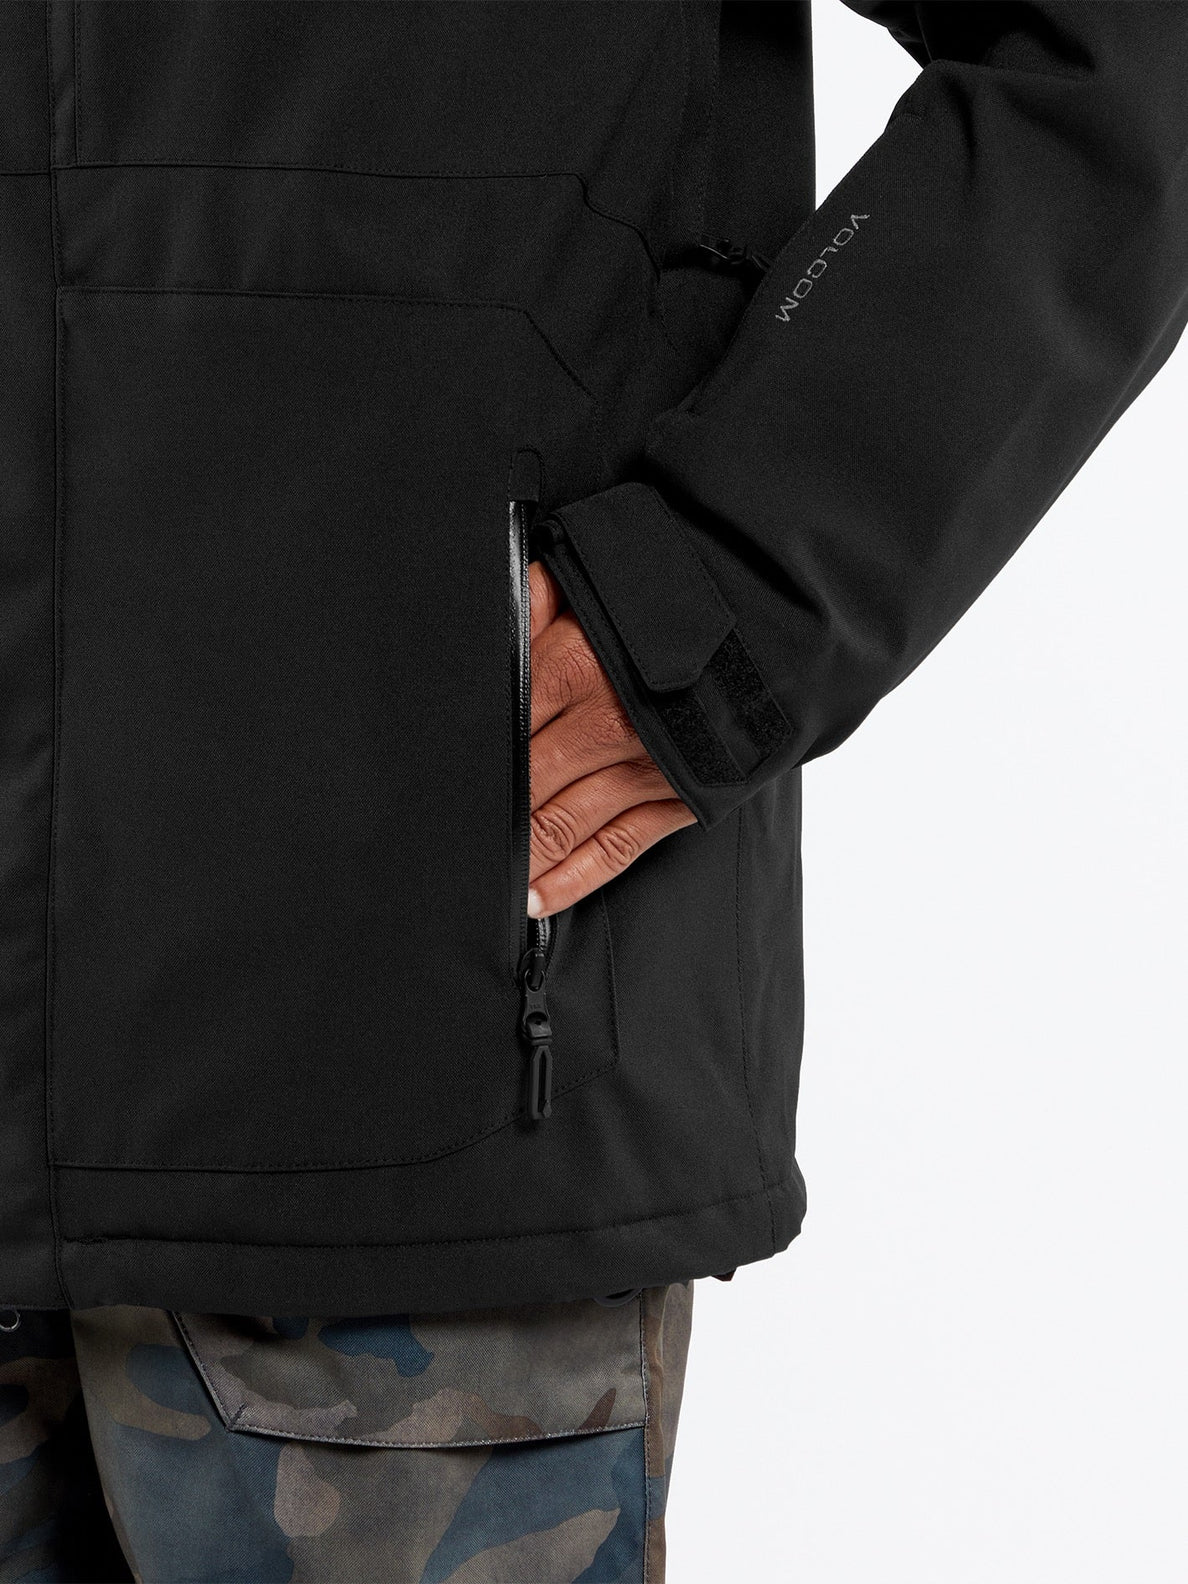 V.Co Op Insulated Jacket - BLACK (G0452407_BLK) [34]